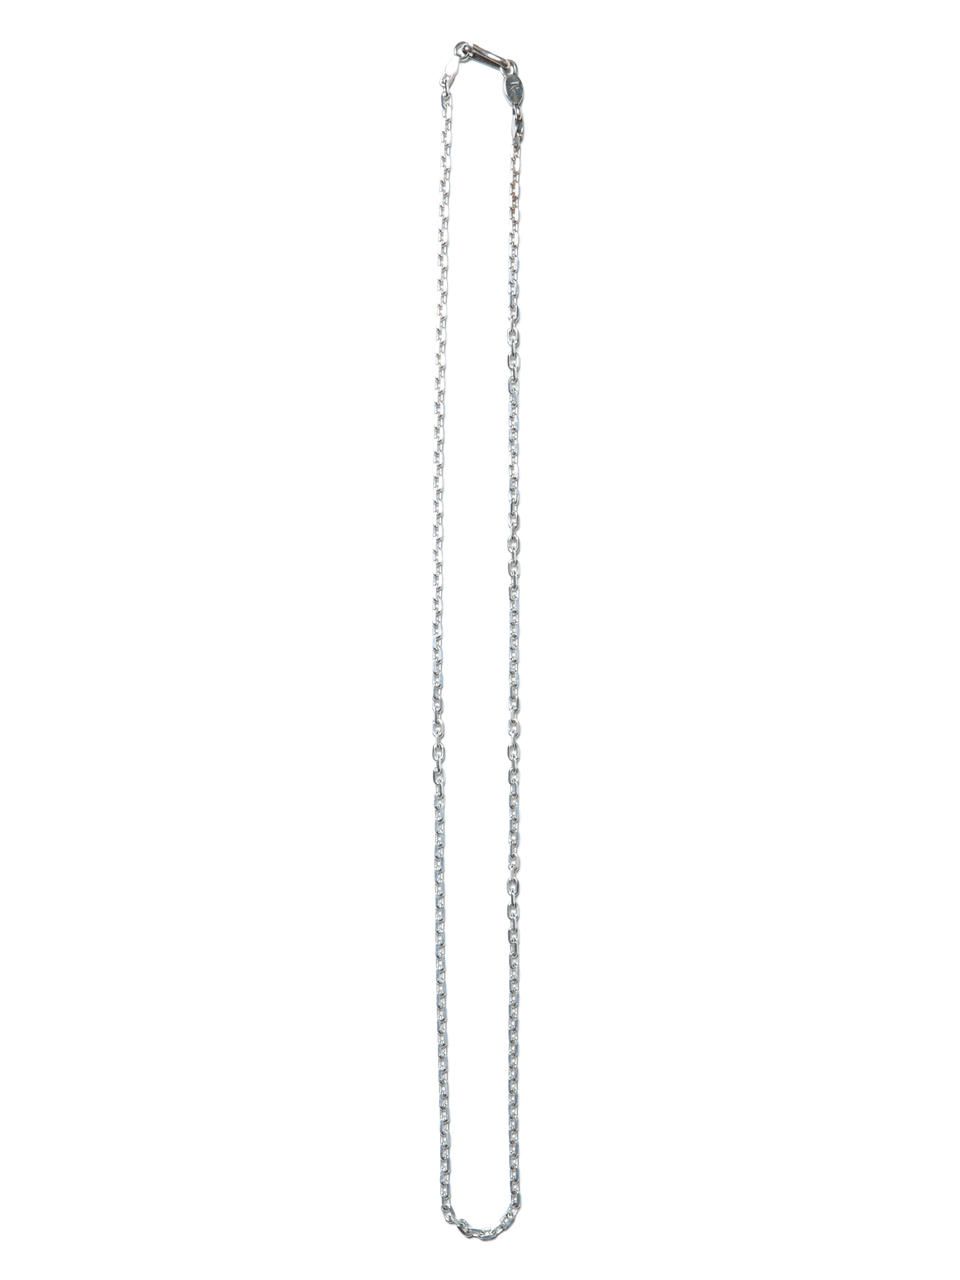 画像: ANTIDOTE BUYERS CLUB/Oval Link Chain（60cm）（シルバー）［オーバルリンクチェーンネックレス］